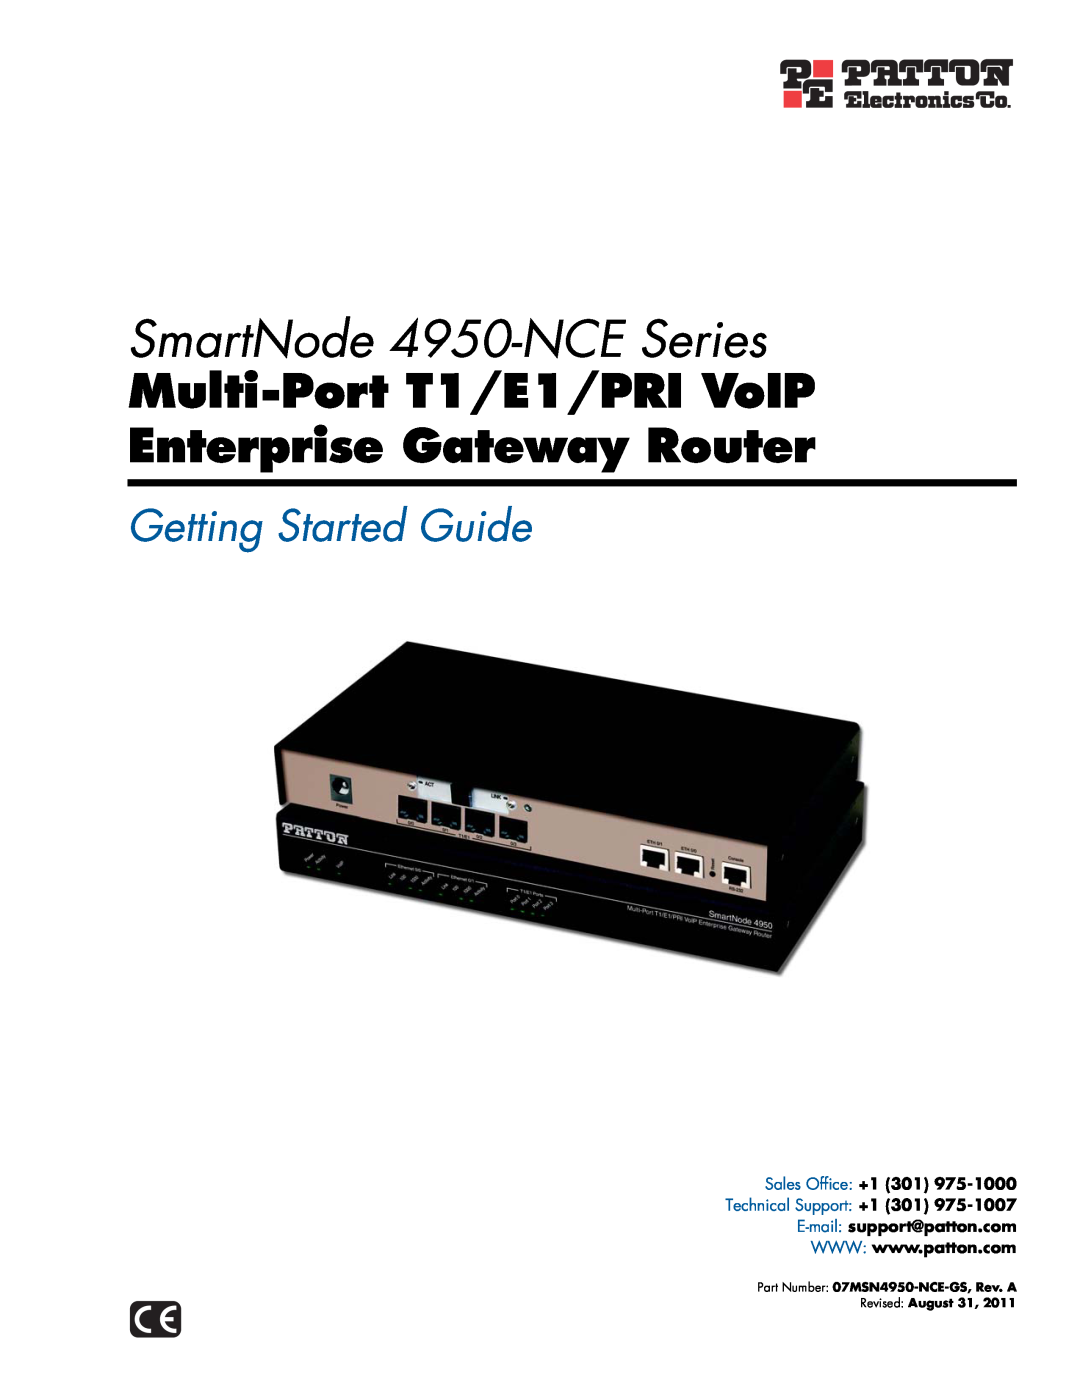 Patton electronic manual SmartNode 4950-NCE Series, Multi-Port T1/E1/PRI VoIP Enterprise Gateway Router 